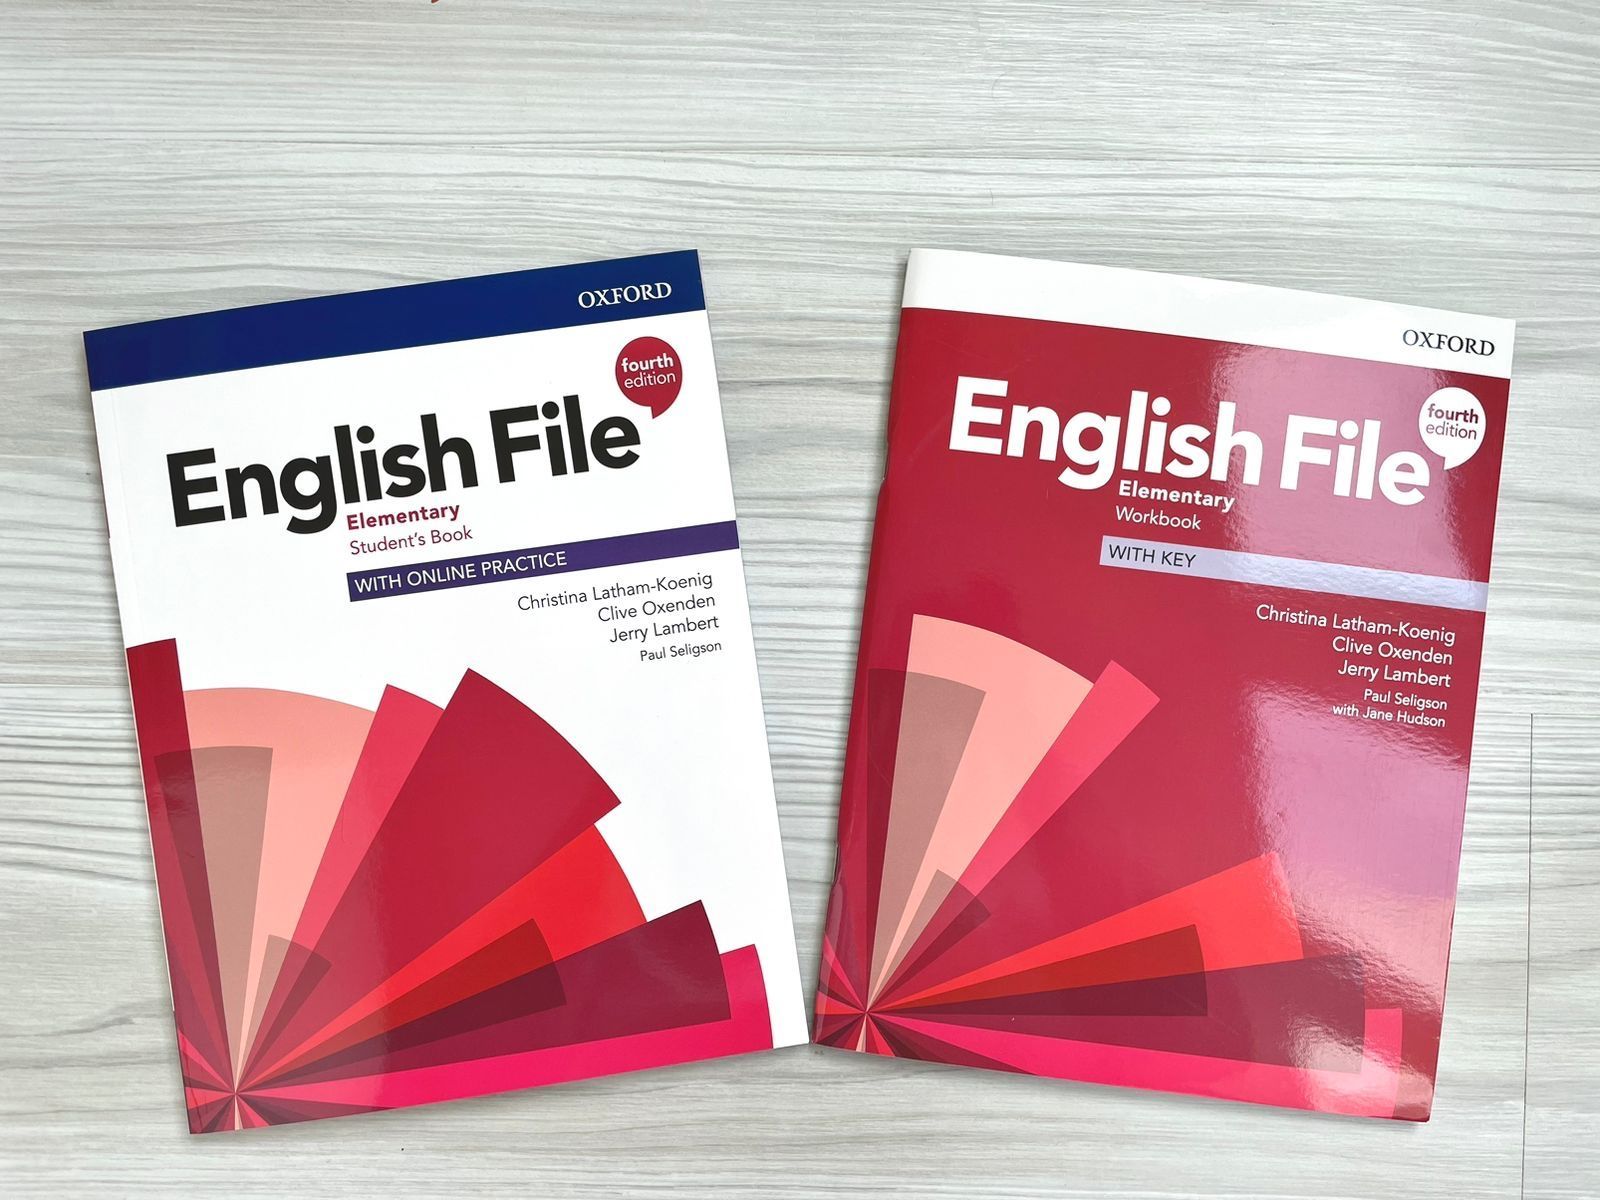 English file elementary 4. English file: Elementary. English file 4 Edition Elementary. English file Elementary Workbook fourth Edition. English file Elementary 4th Edition.